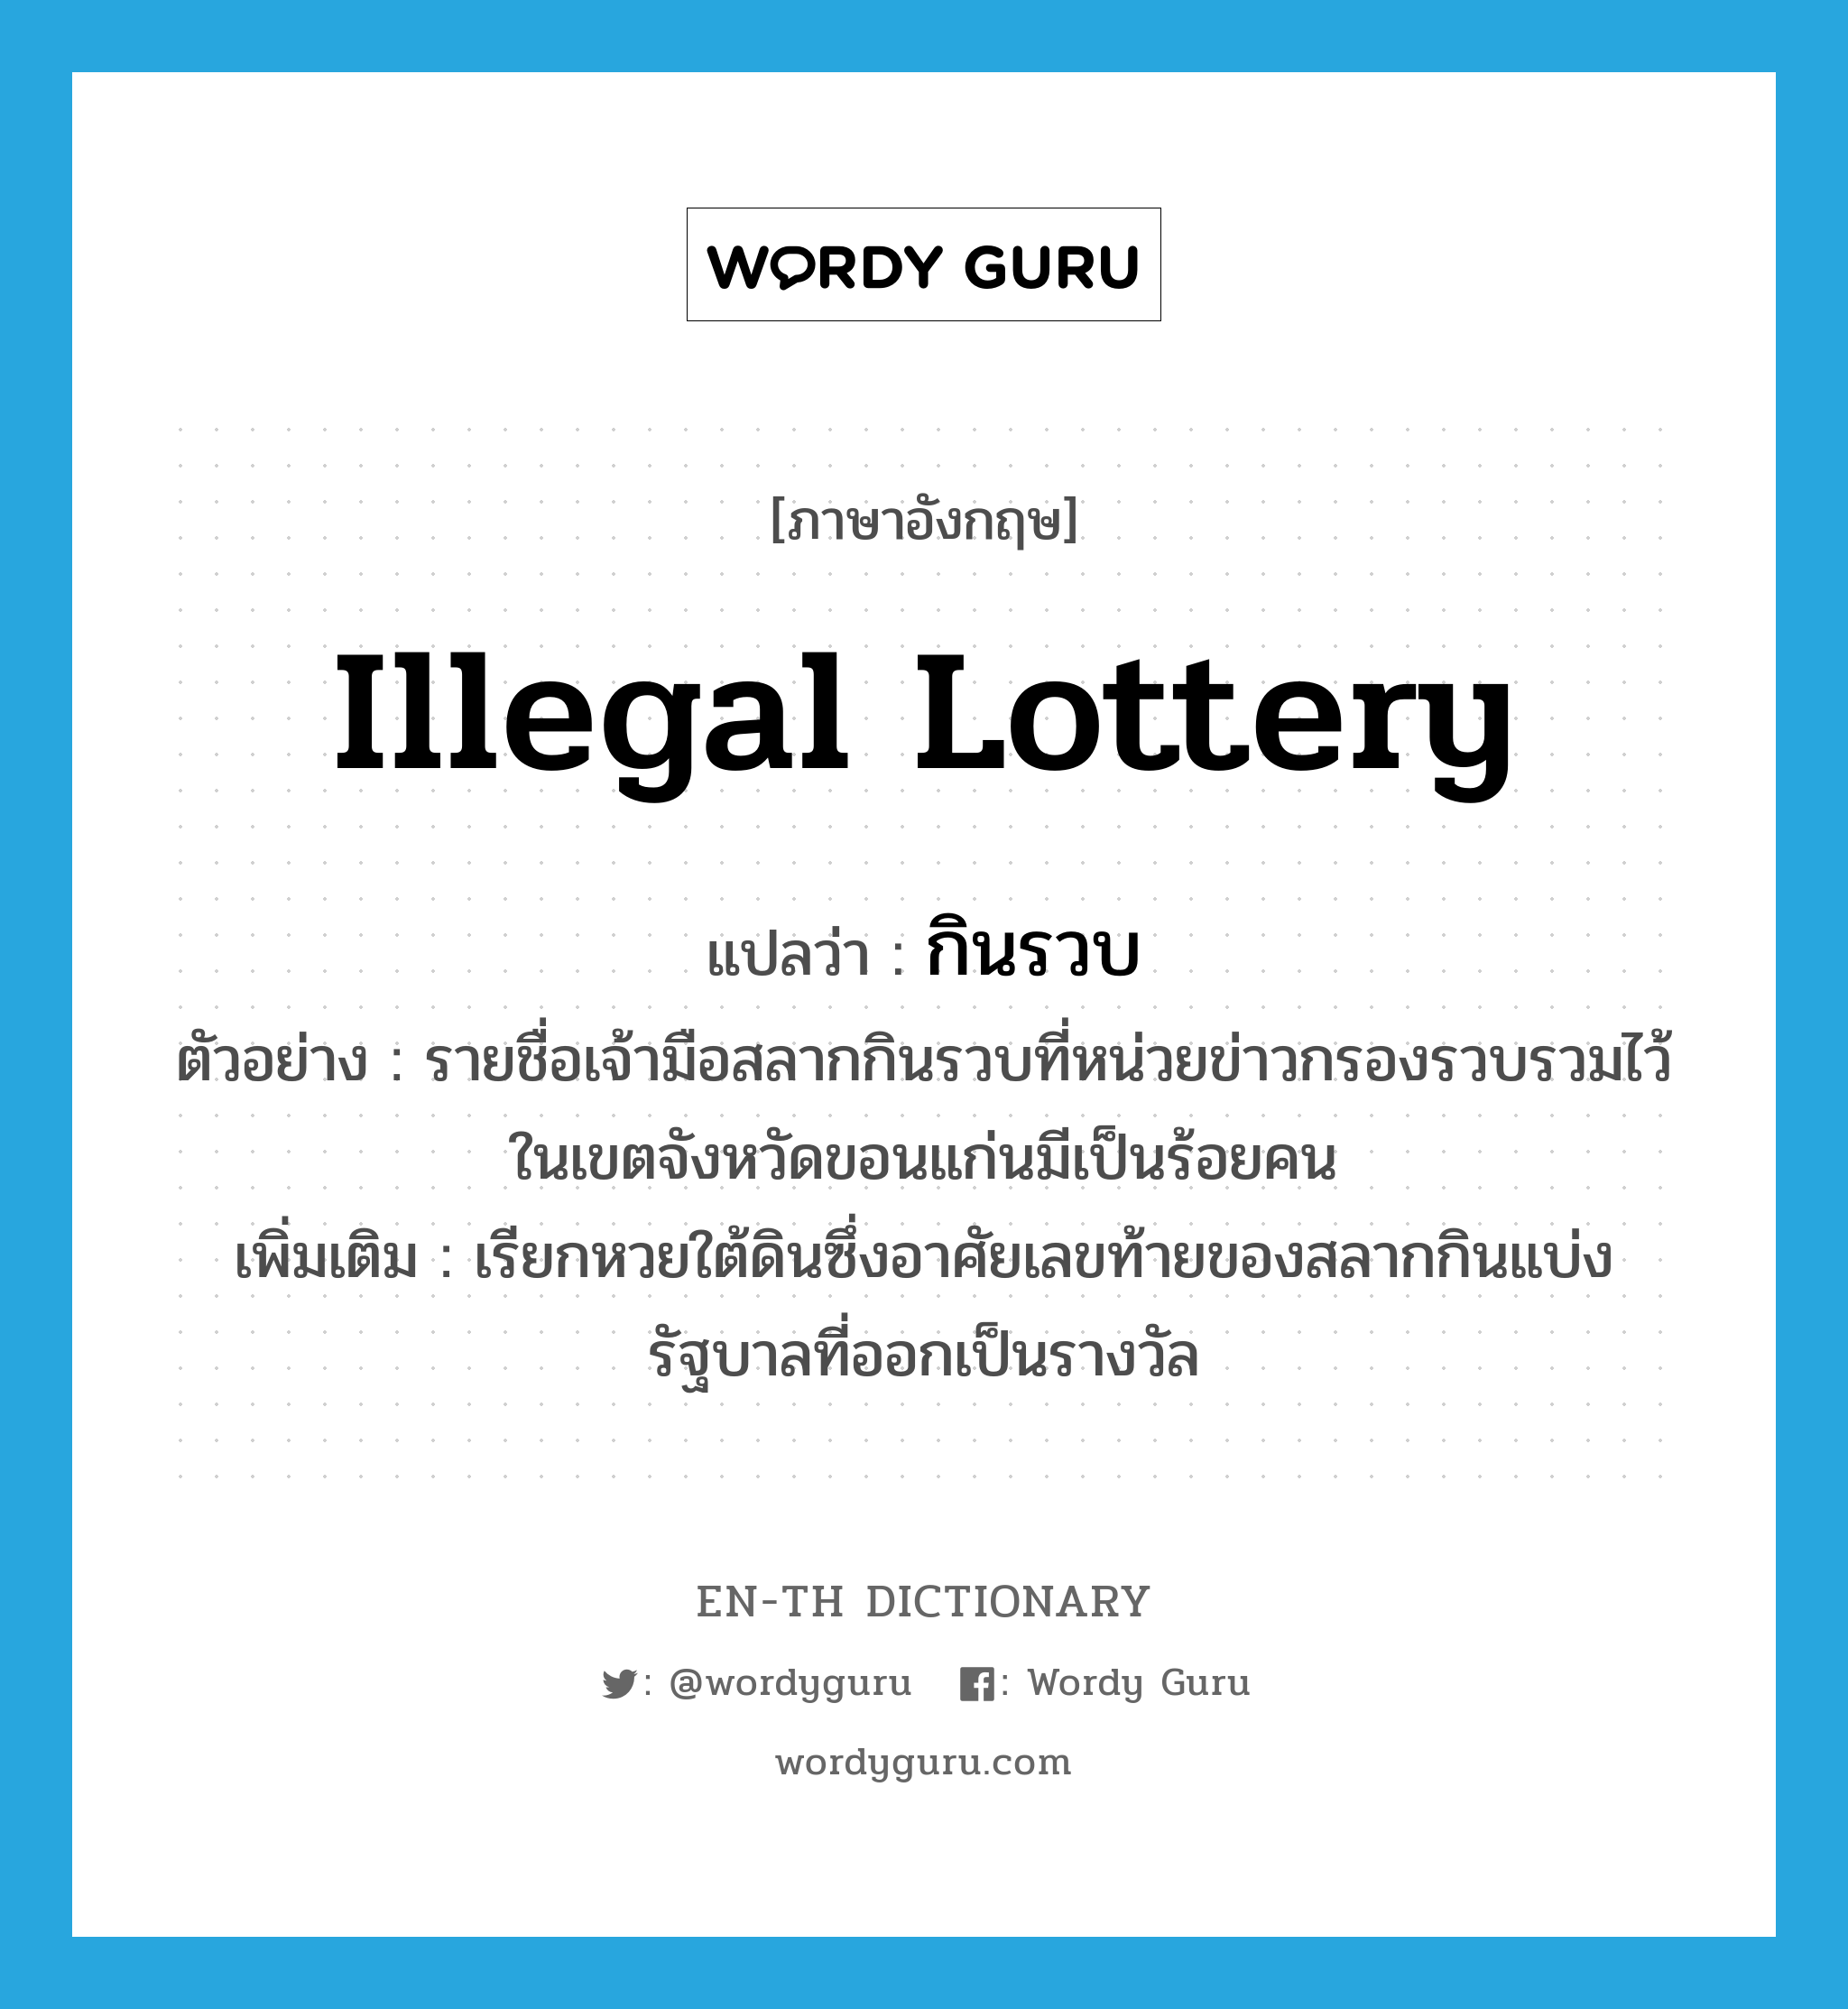 illegal lottery แปลว่า?, คำศัพท์ภาษาอังกฤษ illegal lottery แปลว่า กินรวบ ประเภท N ตัวอย่าง รายชื่อเจ้ามือสลากกินรวบที่หน่วยข่าวกรองรวบรวมไว้ในเขตจังหวัดขอนแก่นมีเป็นร้อยคน เพิ่มเติม เรียกหวยใต้ดินซึ่งอาศัยเลขท้ายของสลากกินแบ่งรัฐบาลที่ออกเป็นรางวัล หมวด N